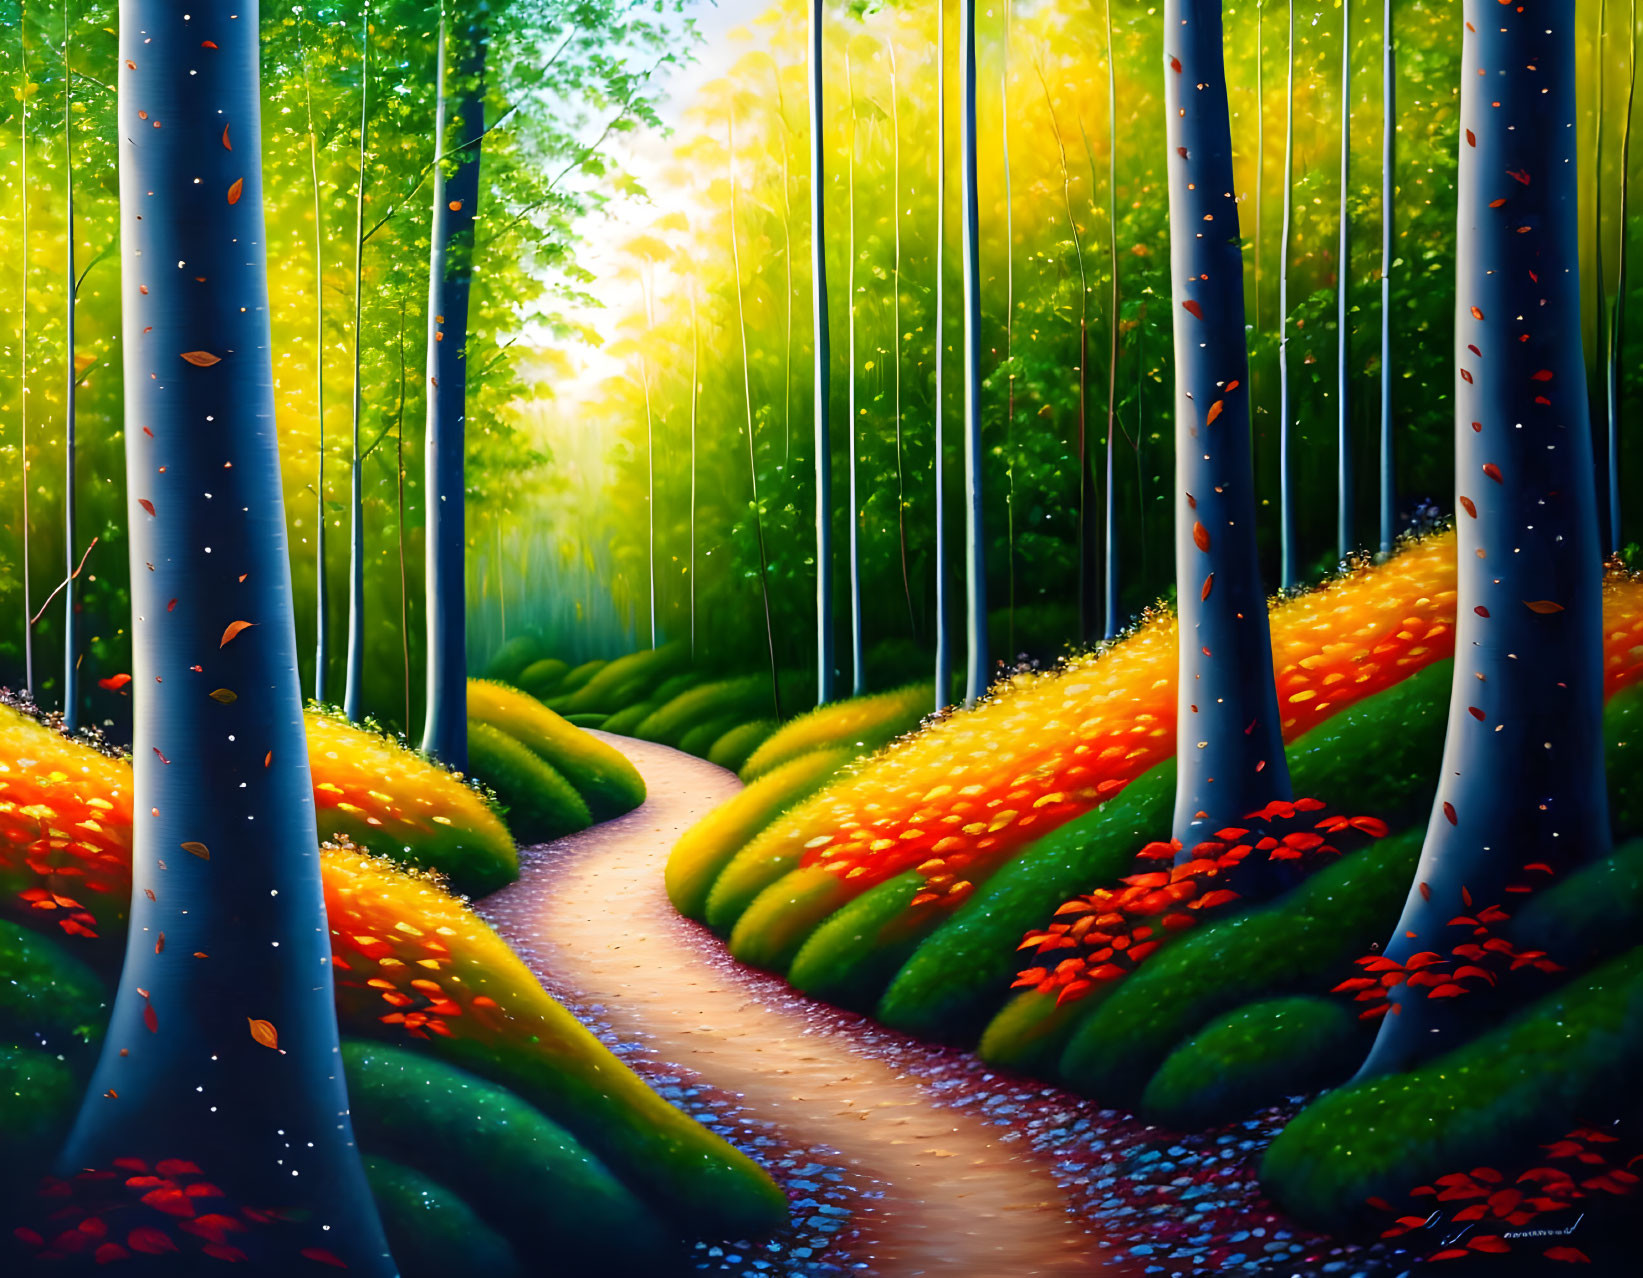 Path: Through a Lush Forest